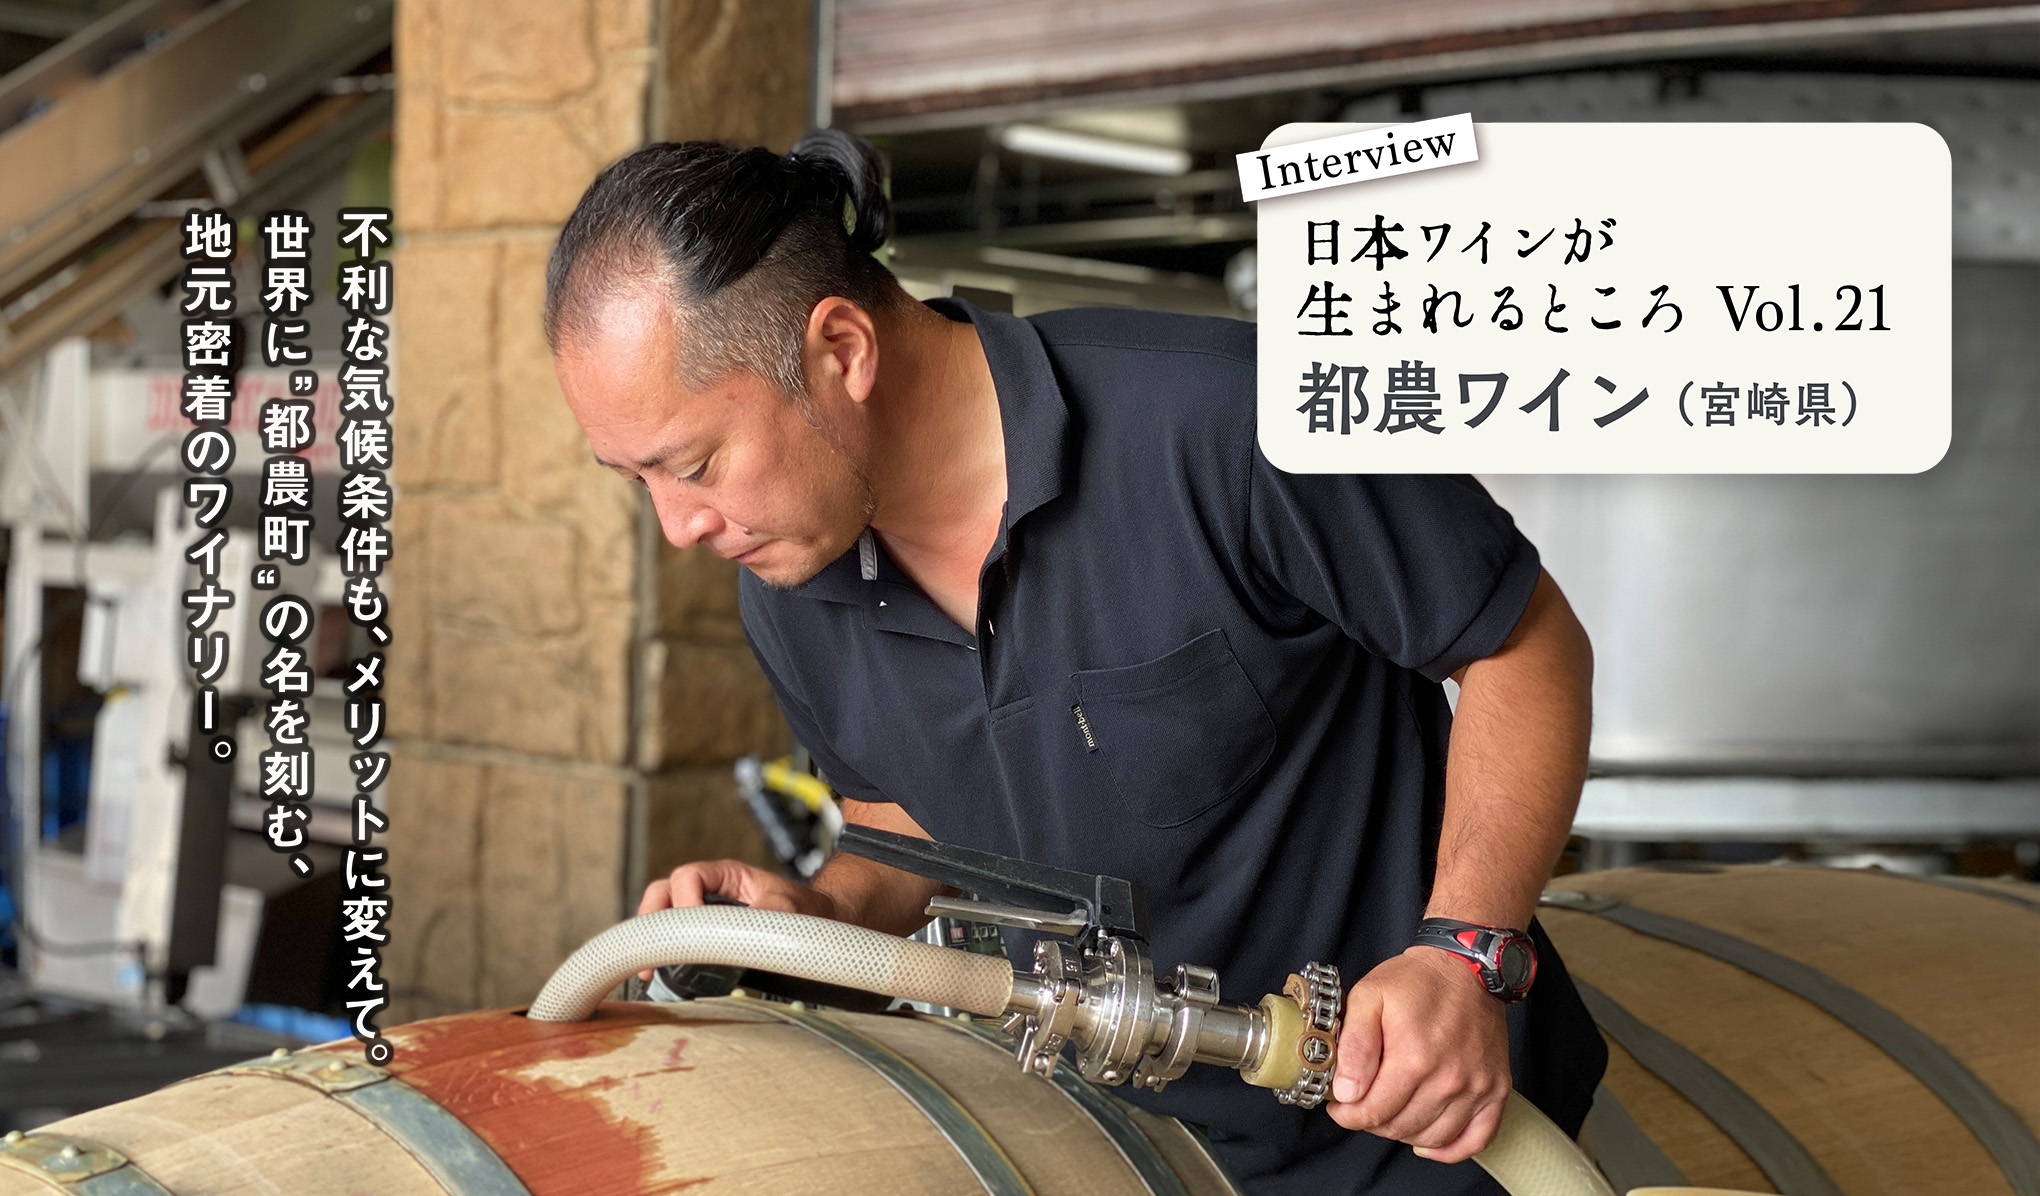 シリーズ・日本ワインが生まれるところ。宮崎での挑戦は続く。『都農ワイン』にインタビュー！